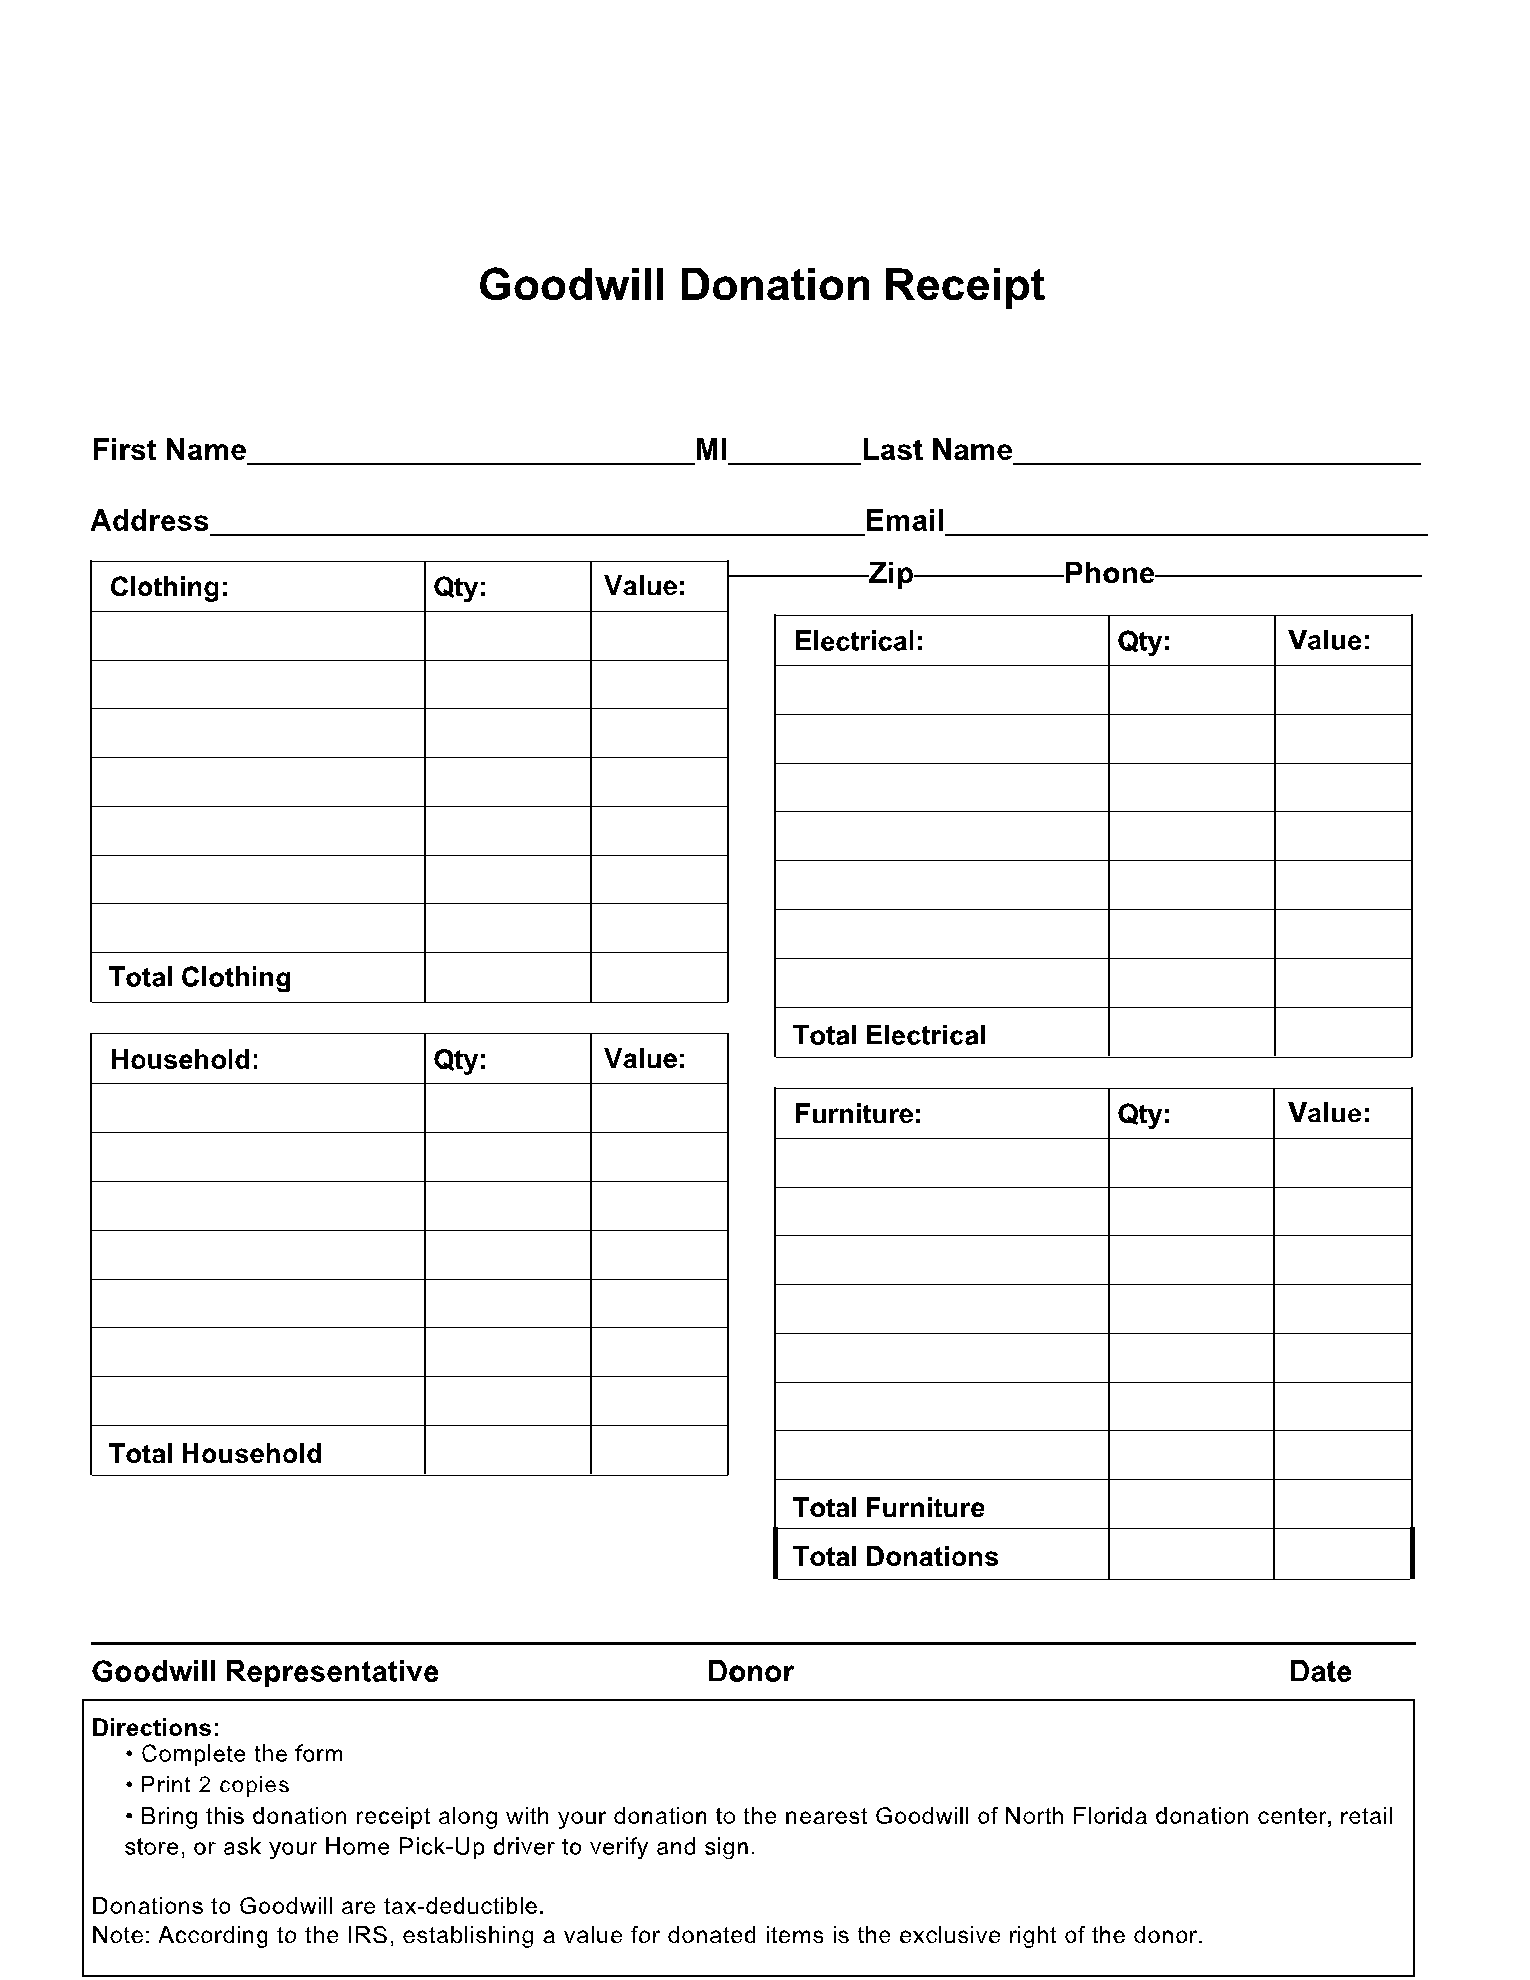 Goodwill Donation Receipt